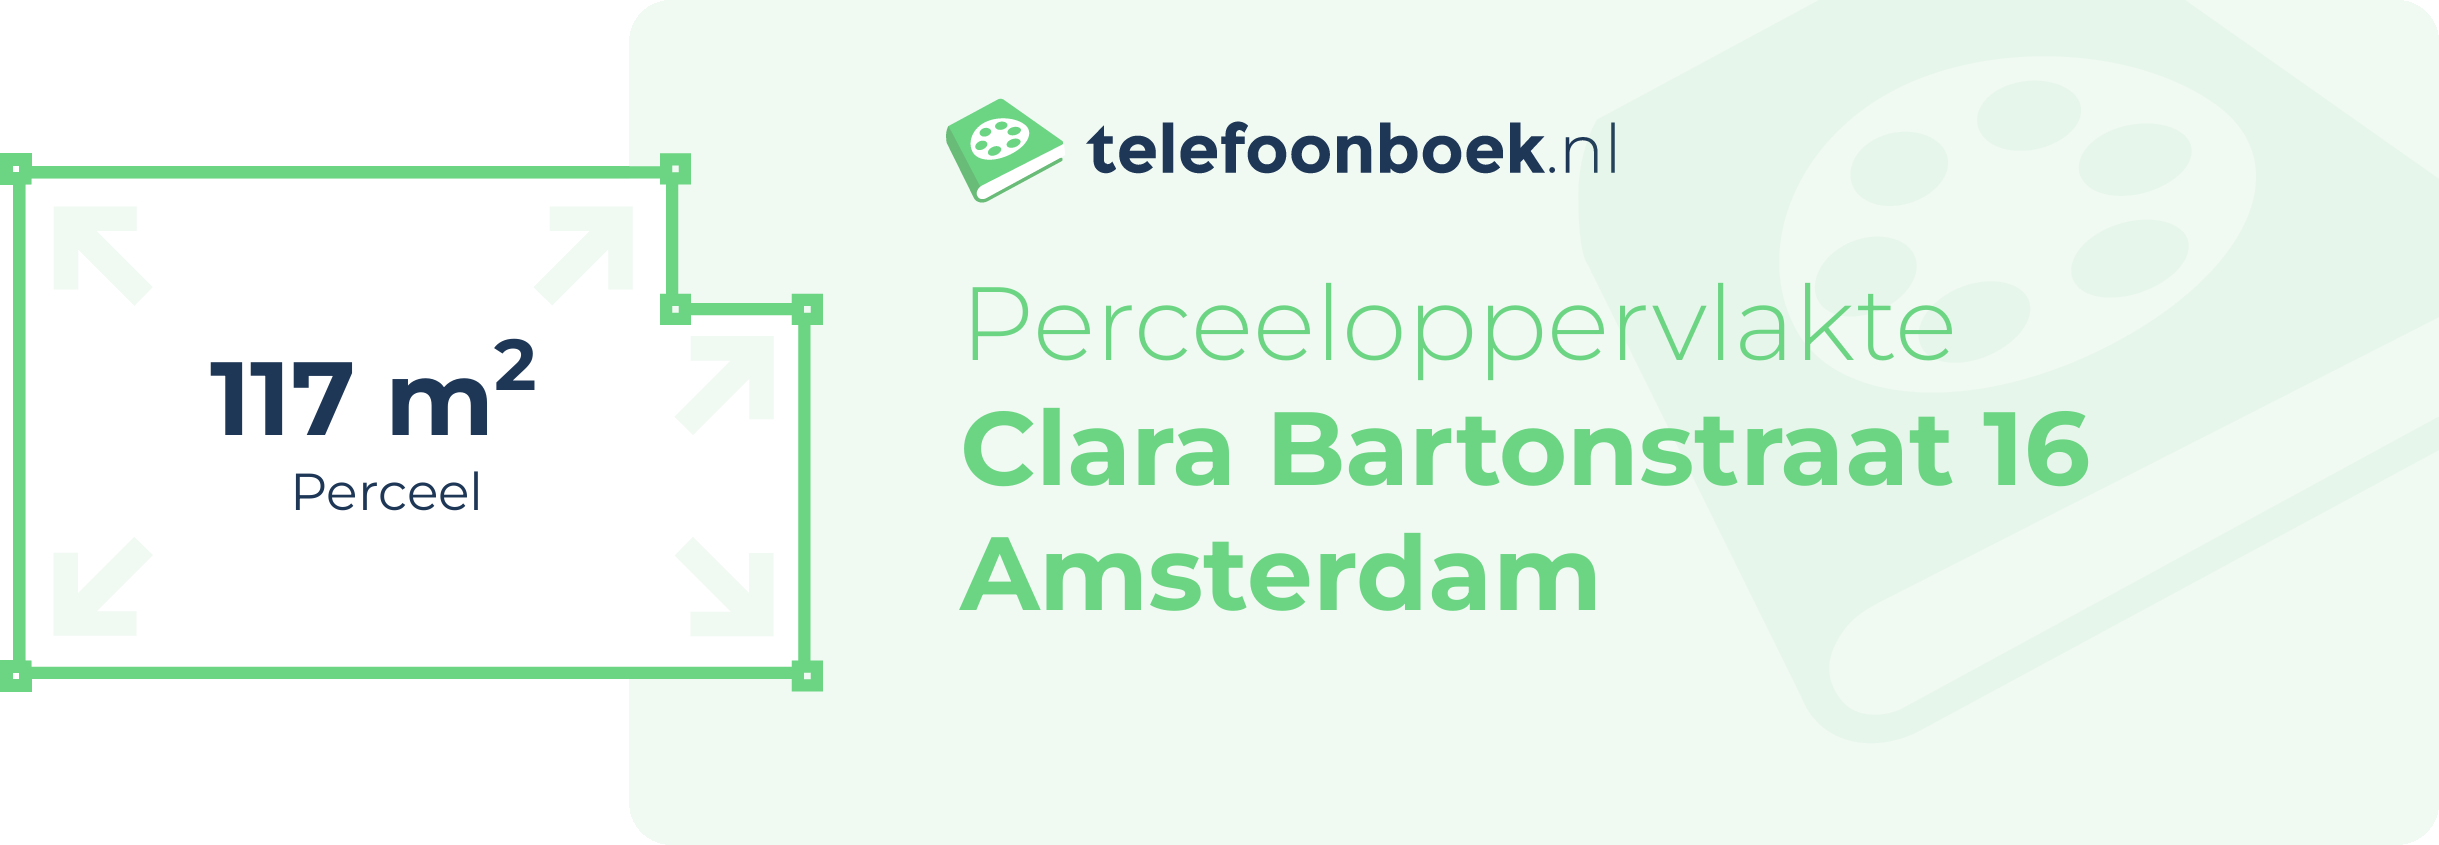 Perceeloppervlakte Clara Bartonstraat 16 Amsterdam